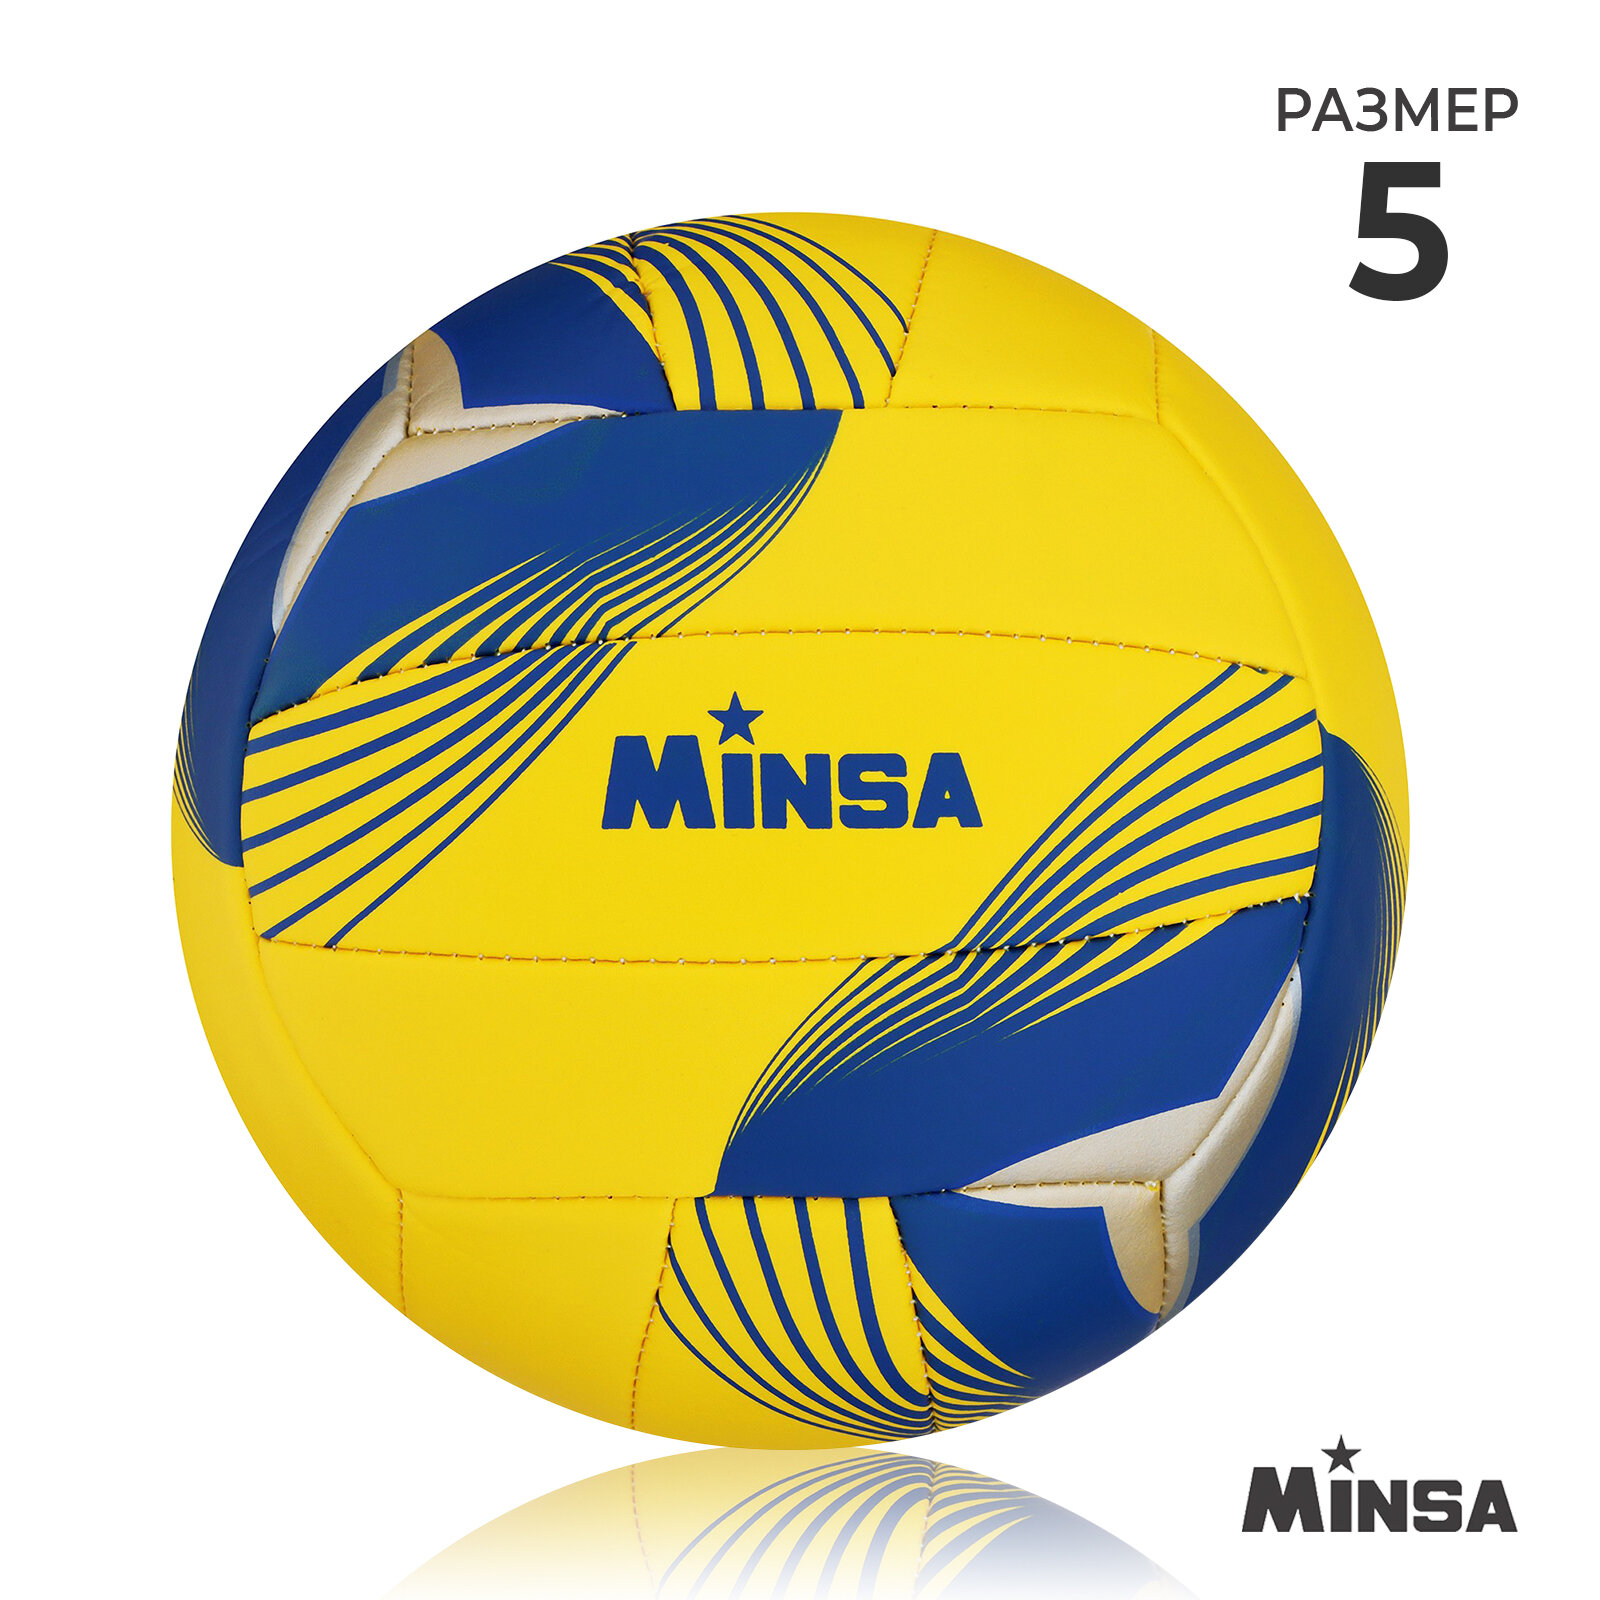 Мяч волейбольный MINSA размер 5 PU 290 гр машинная сшивка 7560493